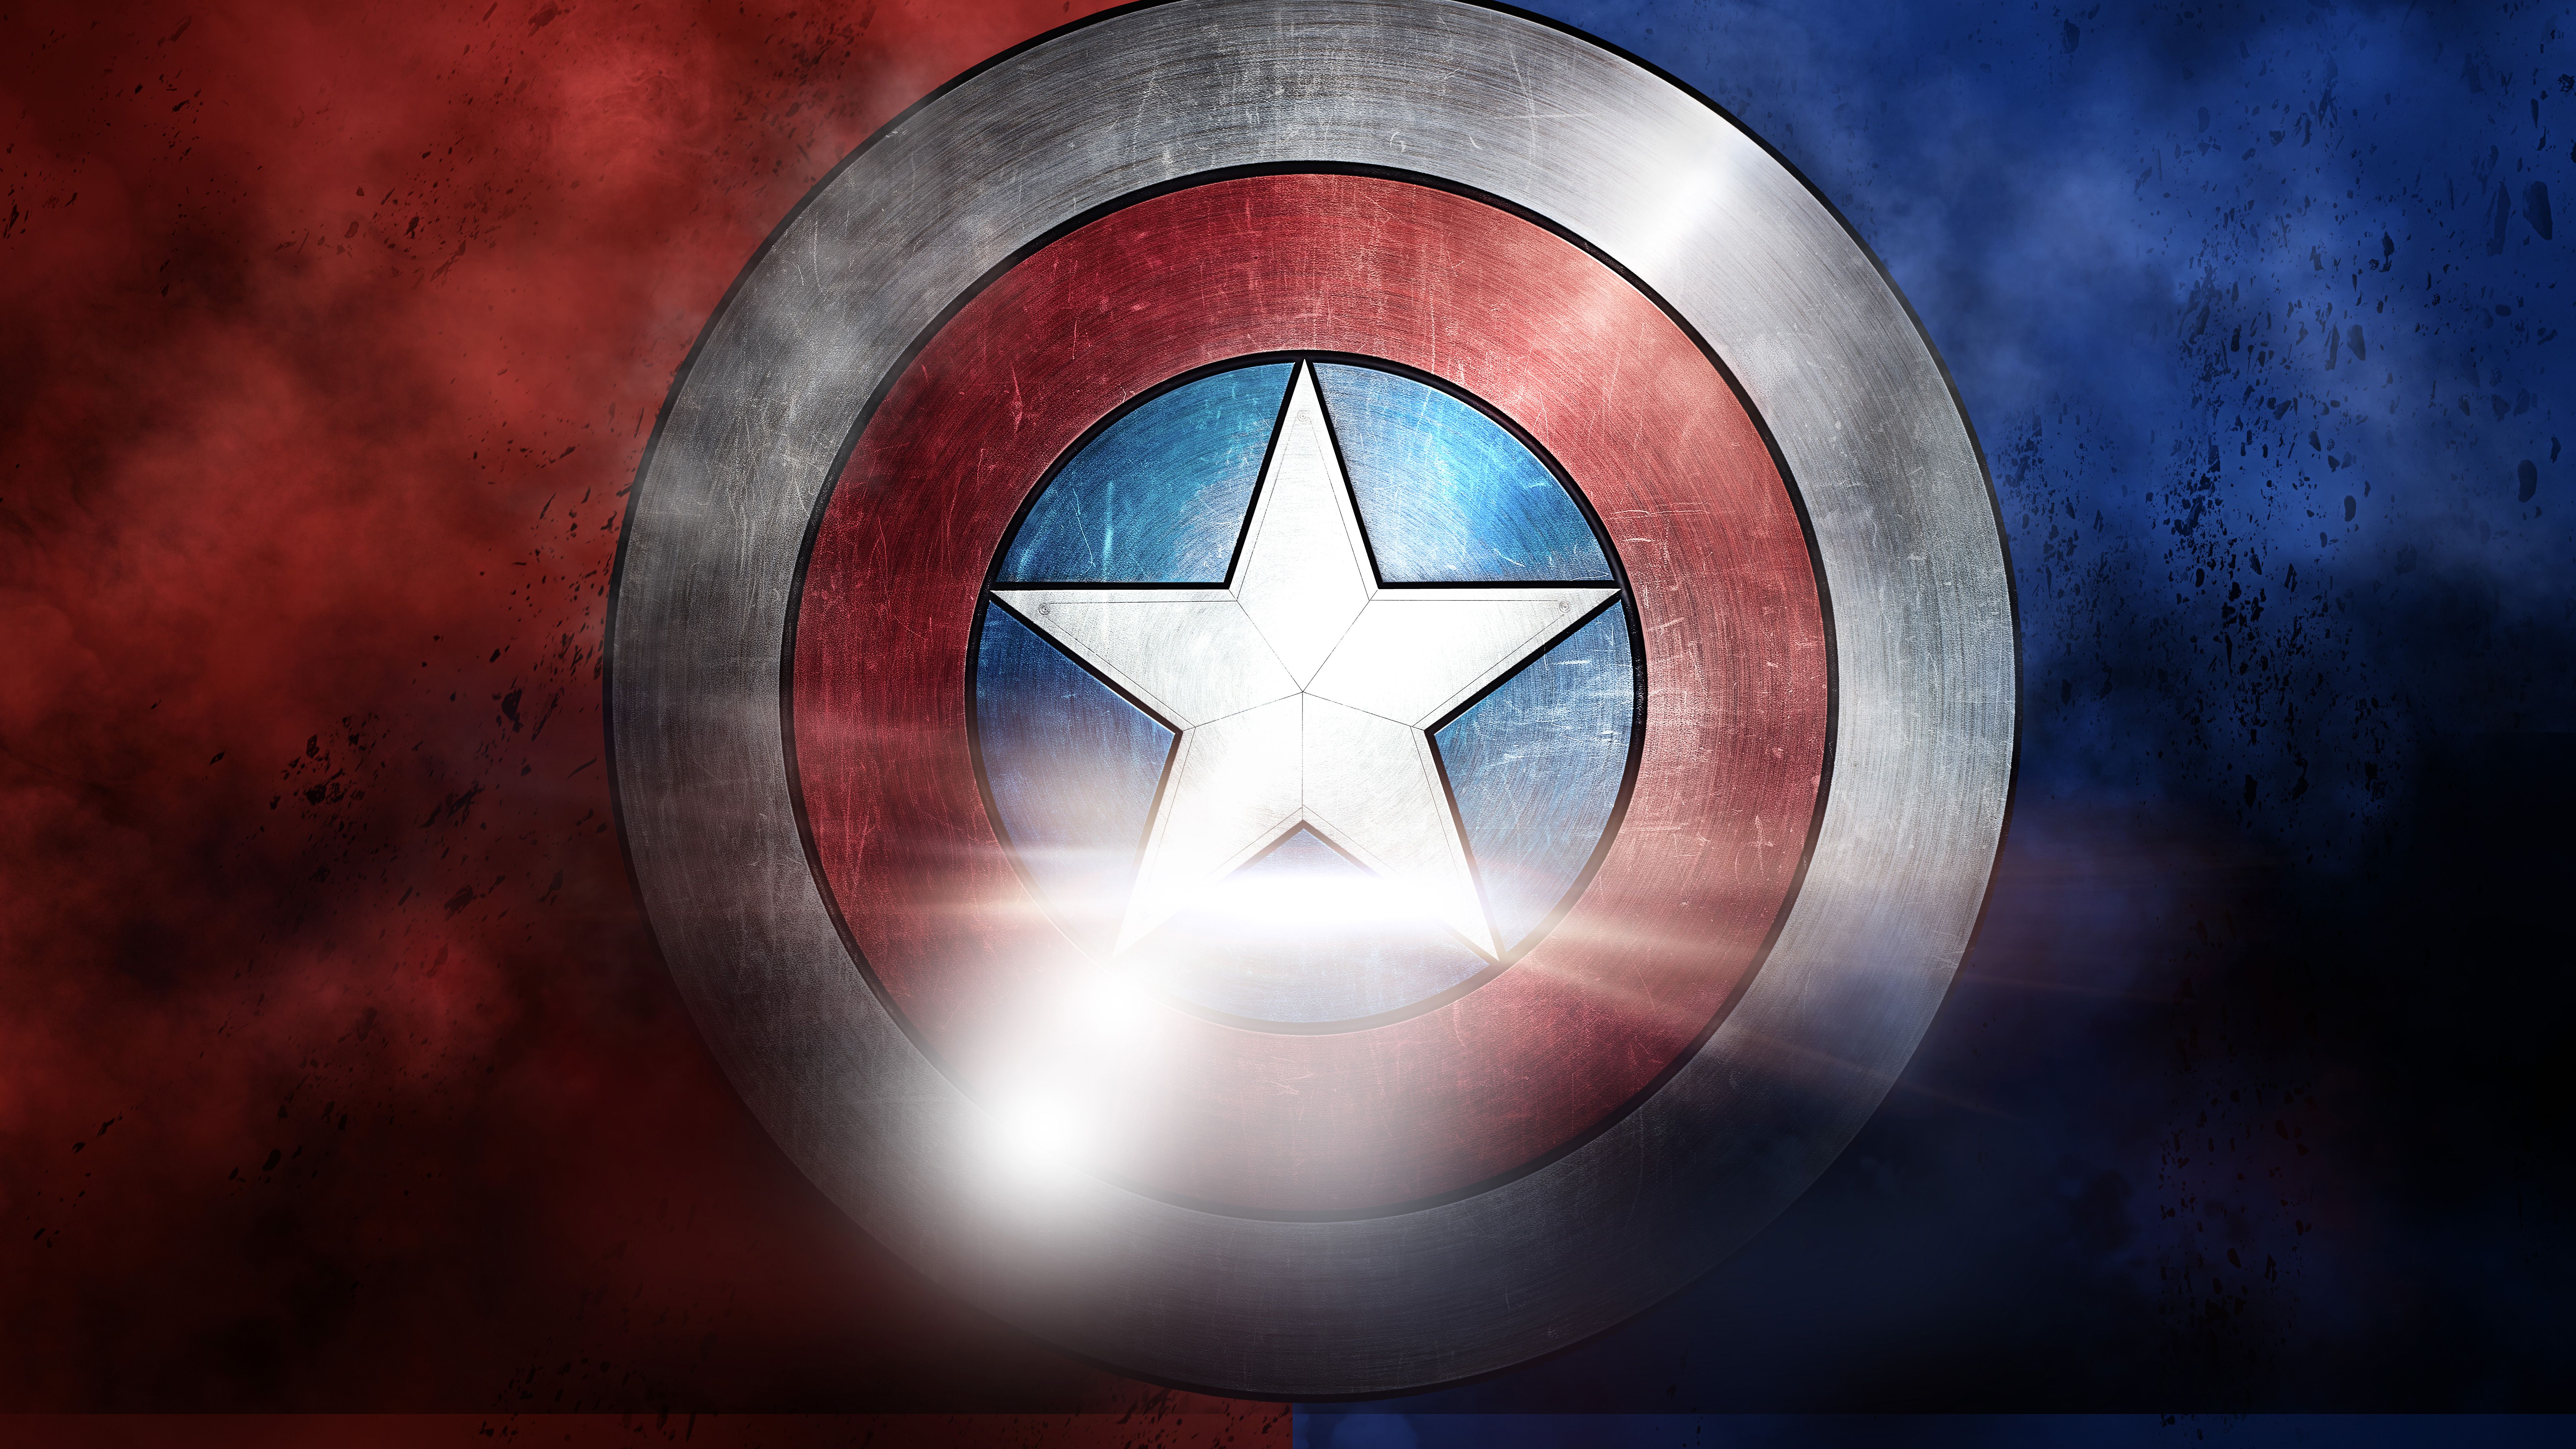 Captain America Shield HD Wallpaper